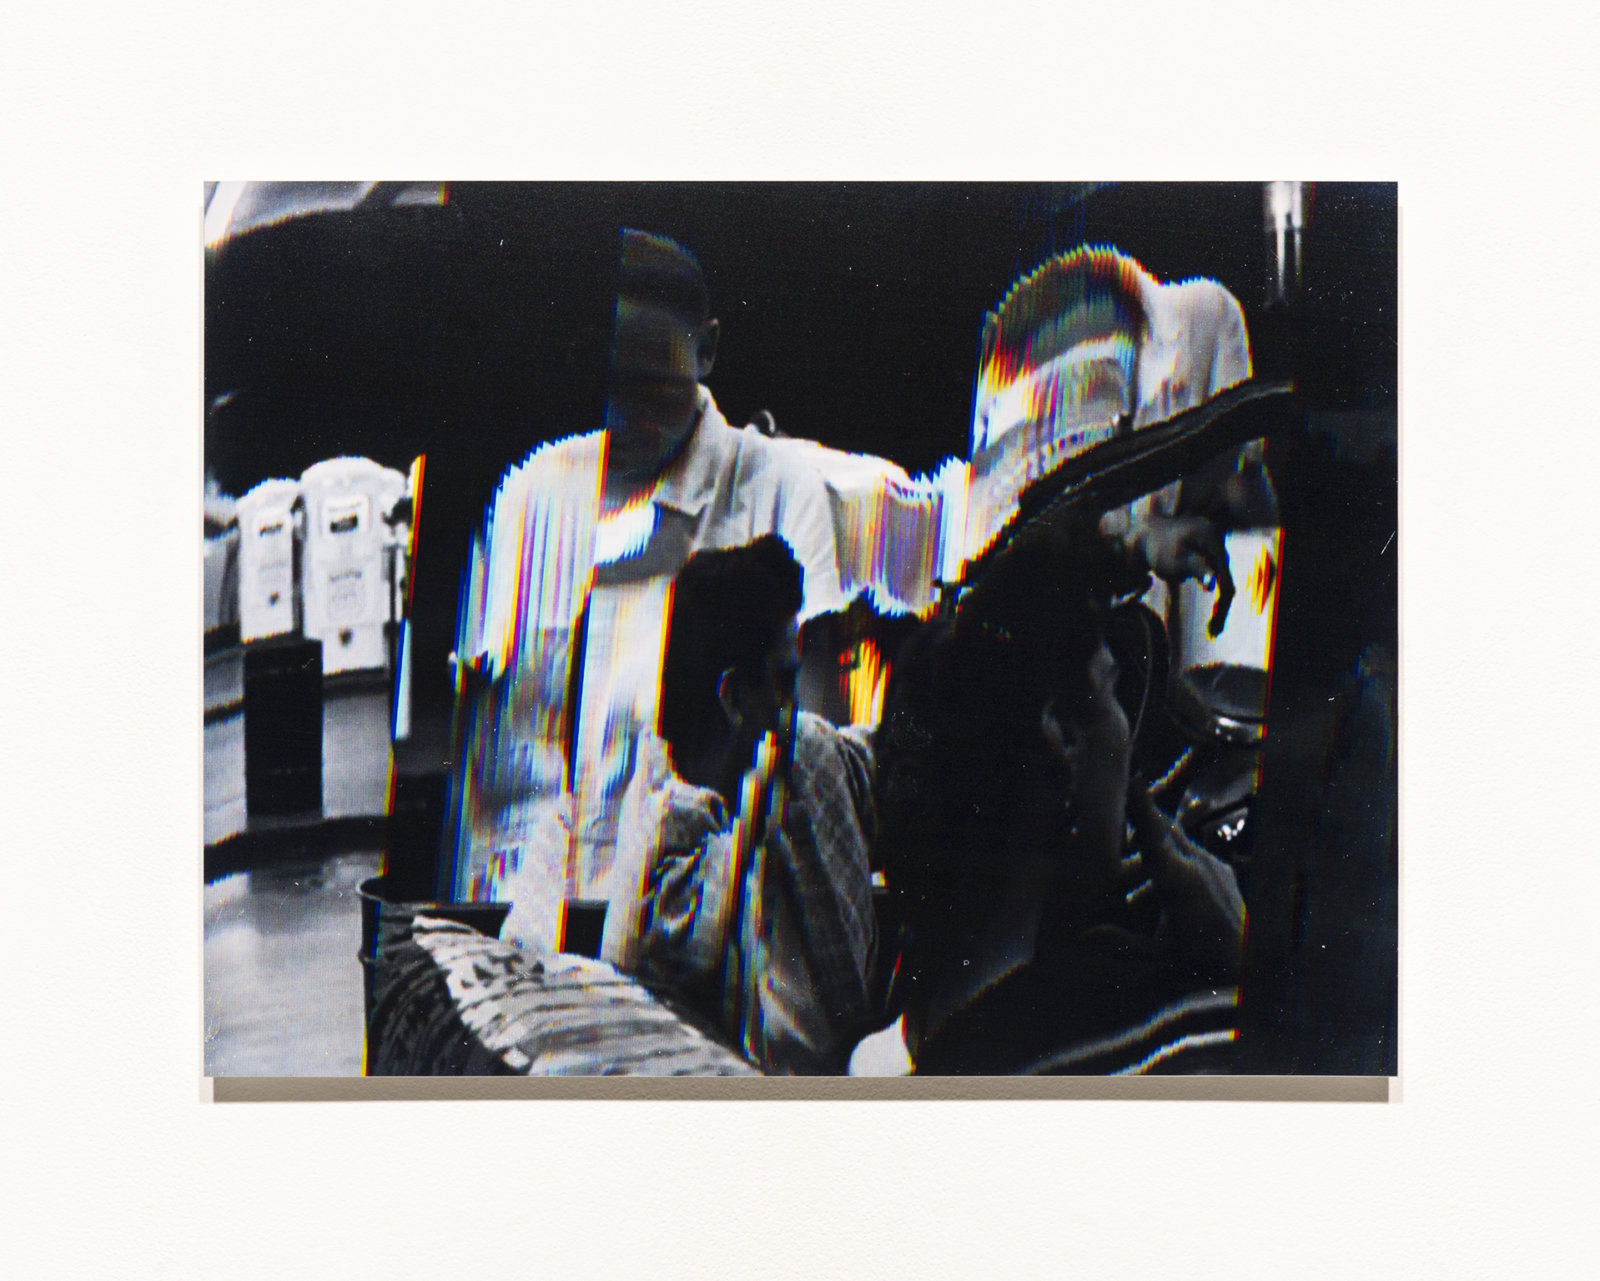 Raymond Boisjoly, Station to Station, 2014, 5 screen resolution lightjet print mounted on dibond, each 18 x 24 in. (46 x 61 cm)